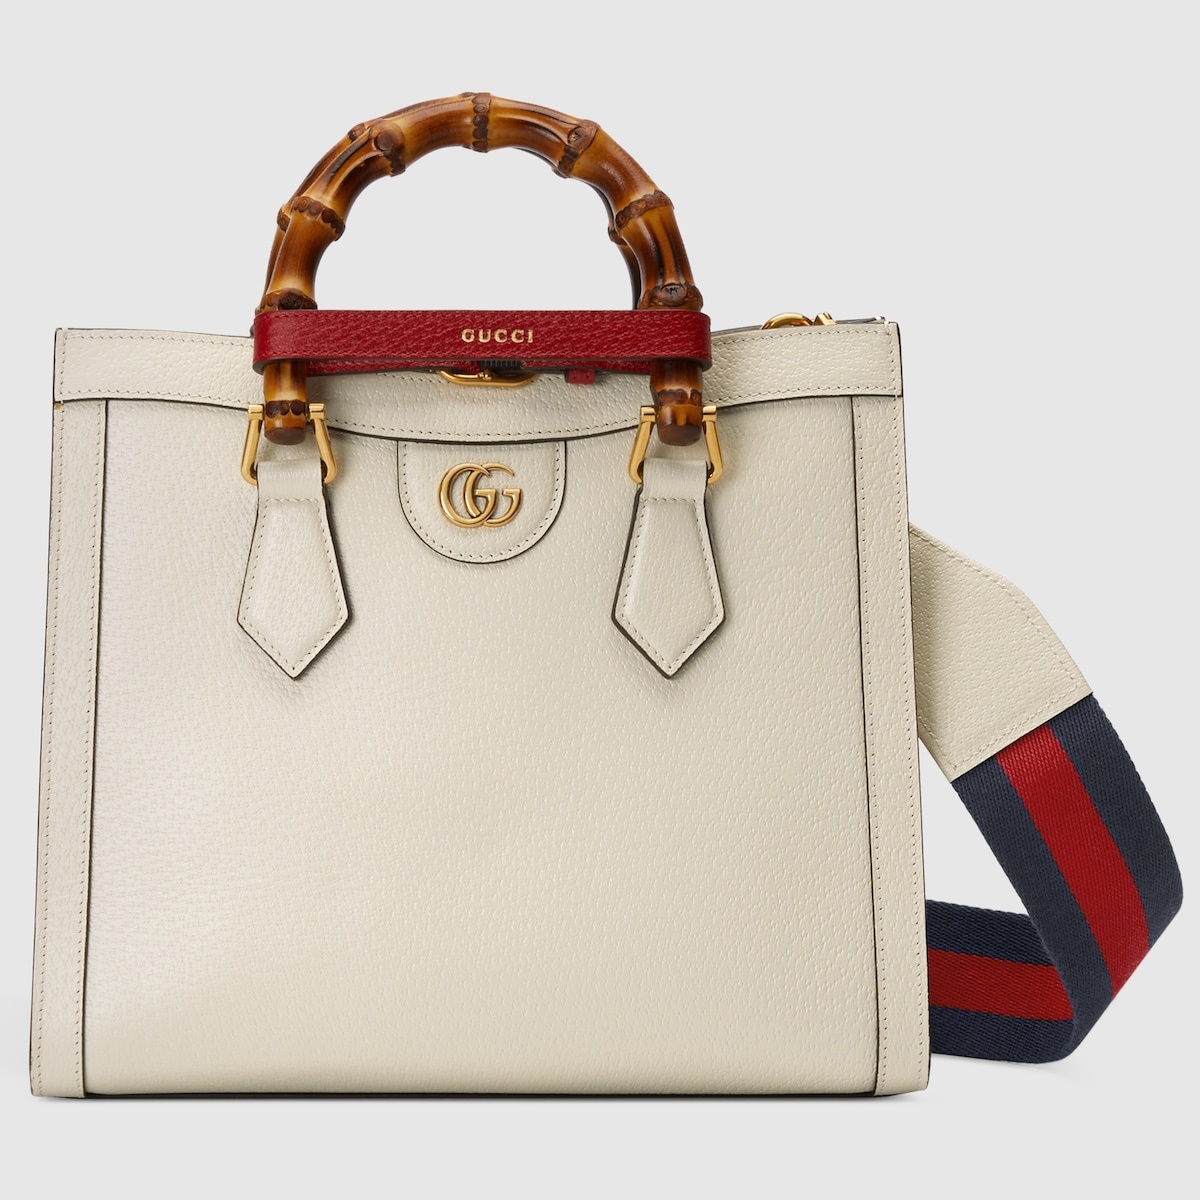 Gucci Diana small tote bag - 1